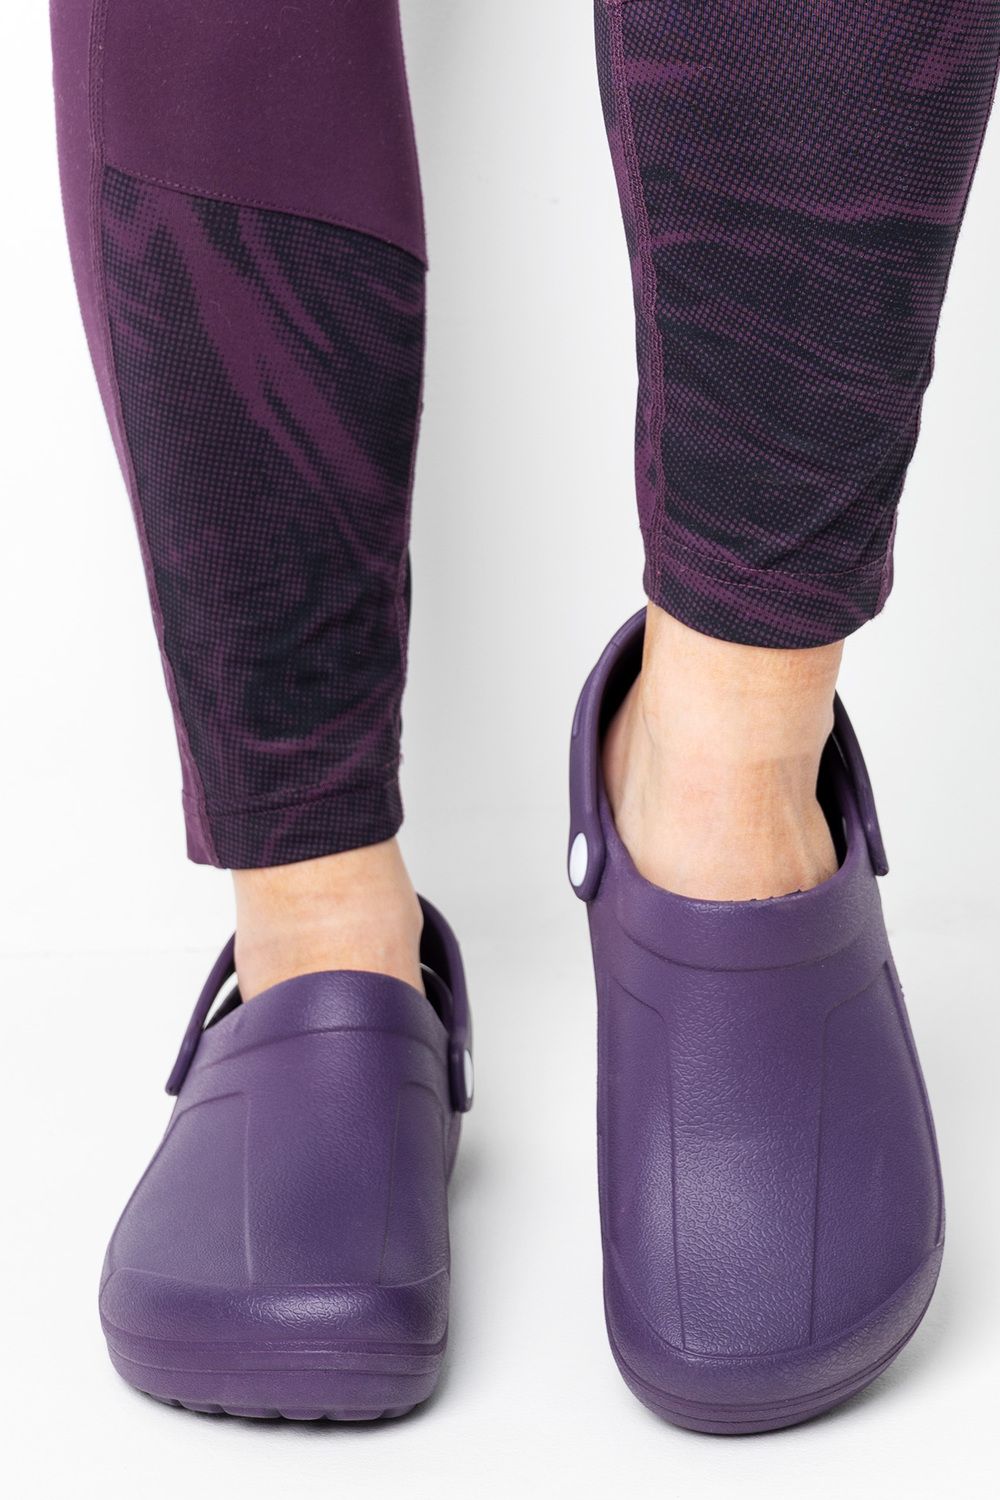 Обувь повседневная женская сабо FGR - фиолетовый